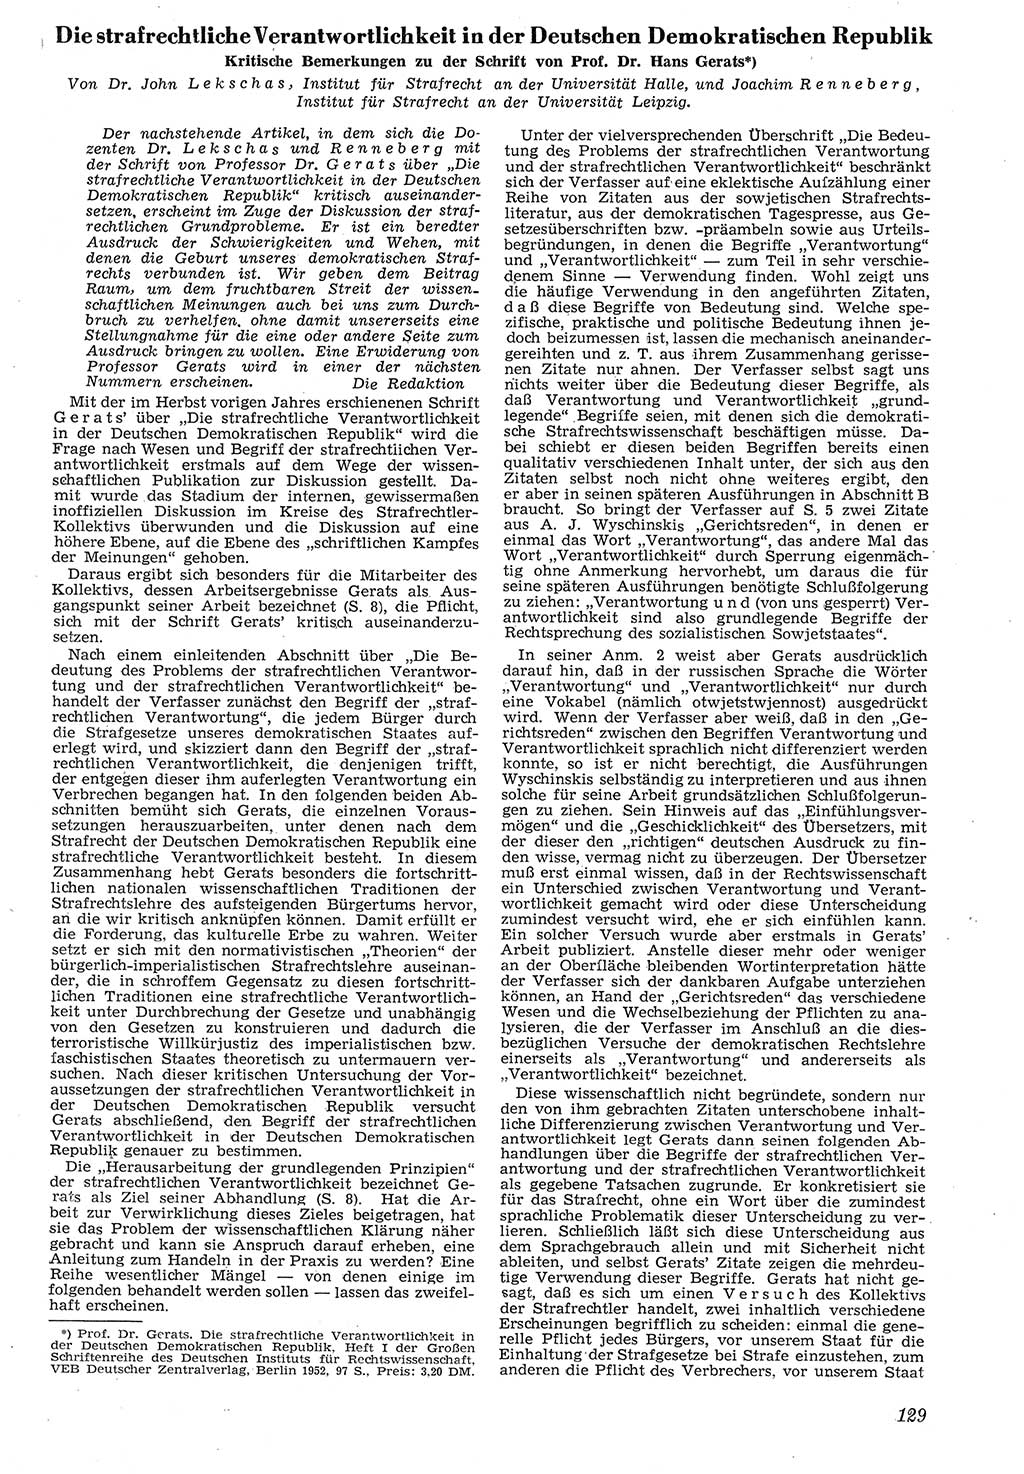 Neue Justiz (NJ), Zeitschrift für Recht und Rechtswissenschaft [Deutsche Demokratische Republik (DDR)], 7. Jahrgang 1953, Seite 129 (NJ DDR 1953, S. 129)